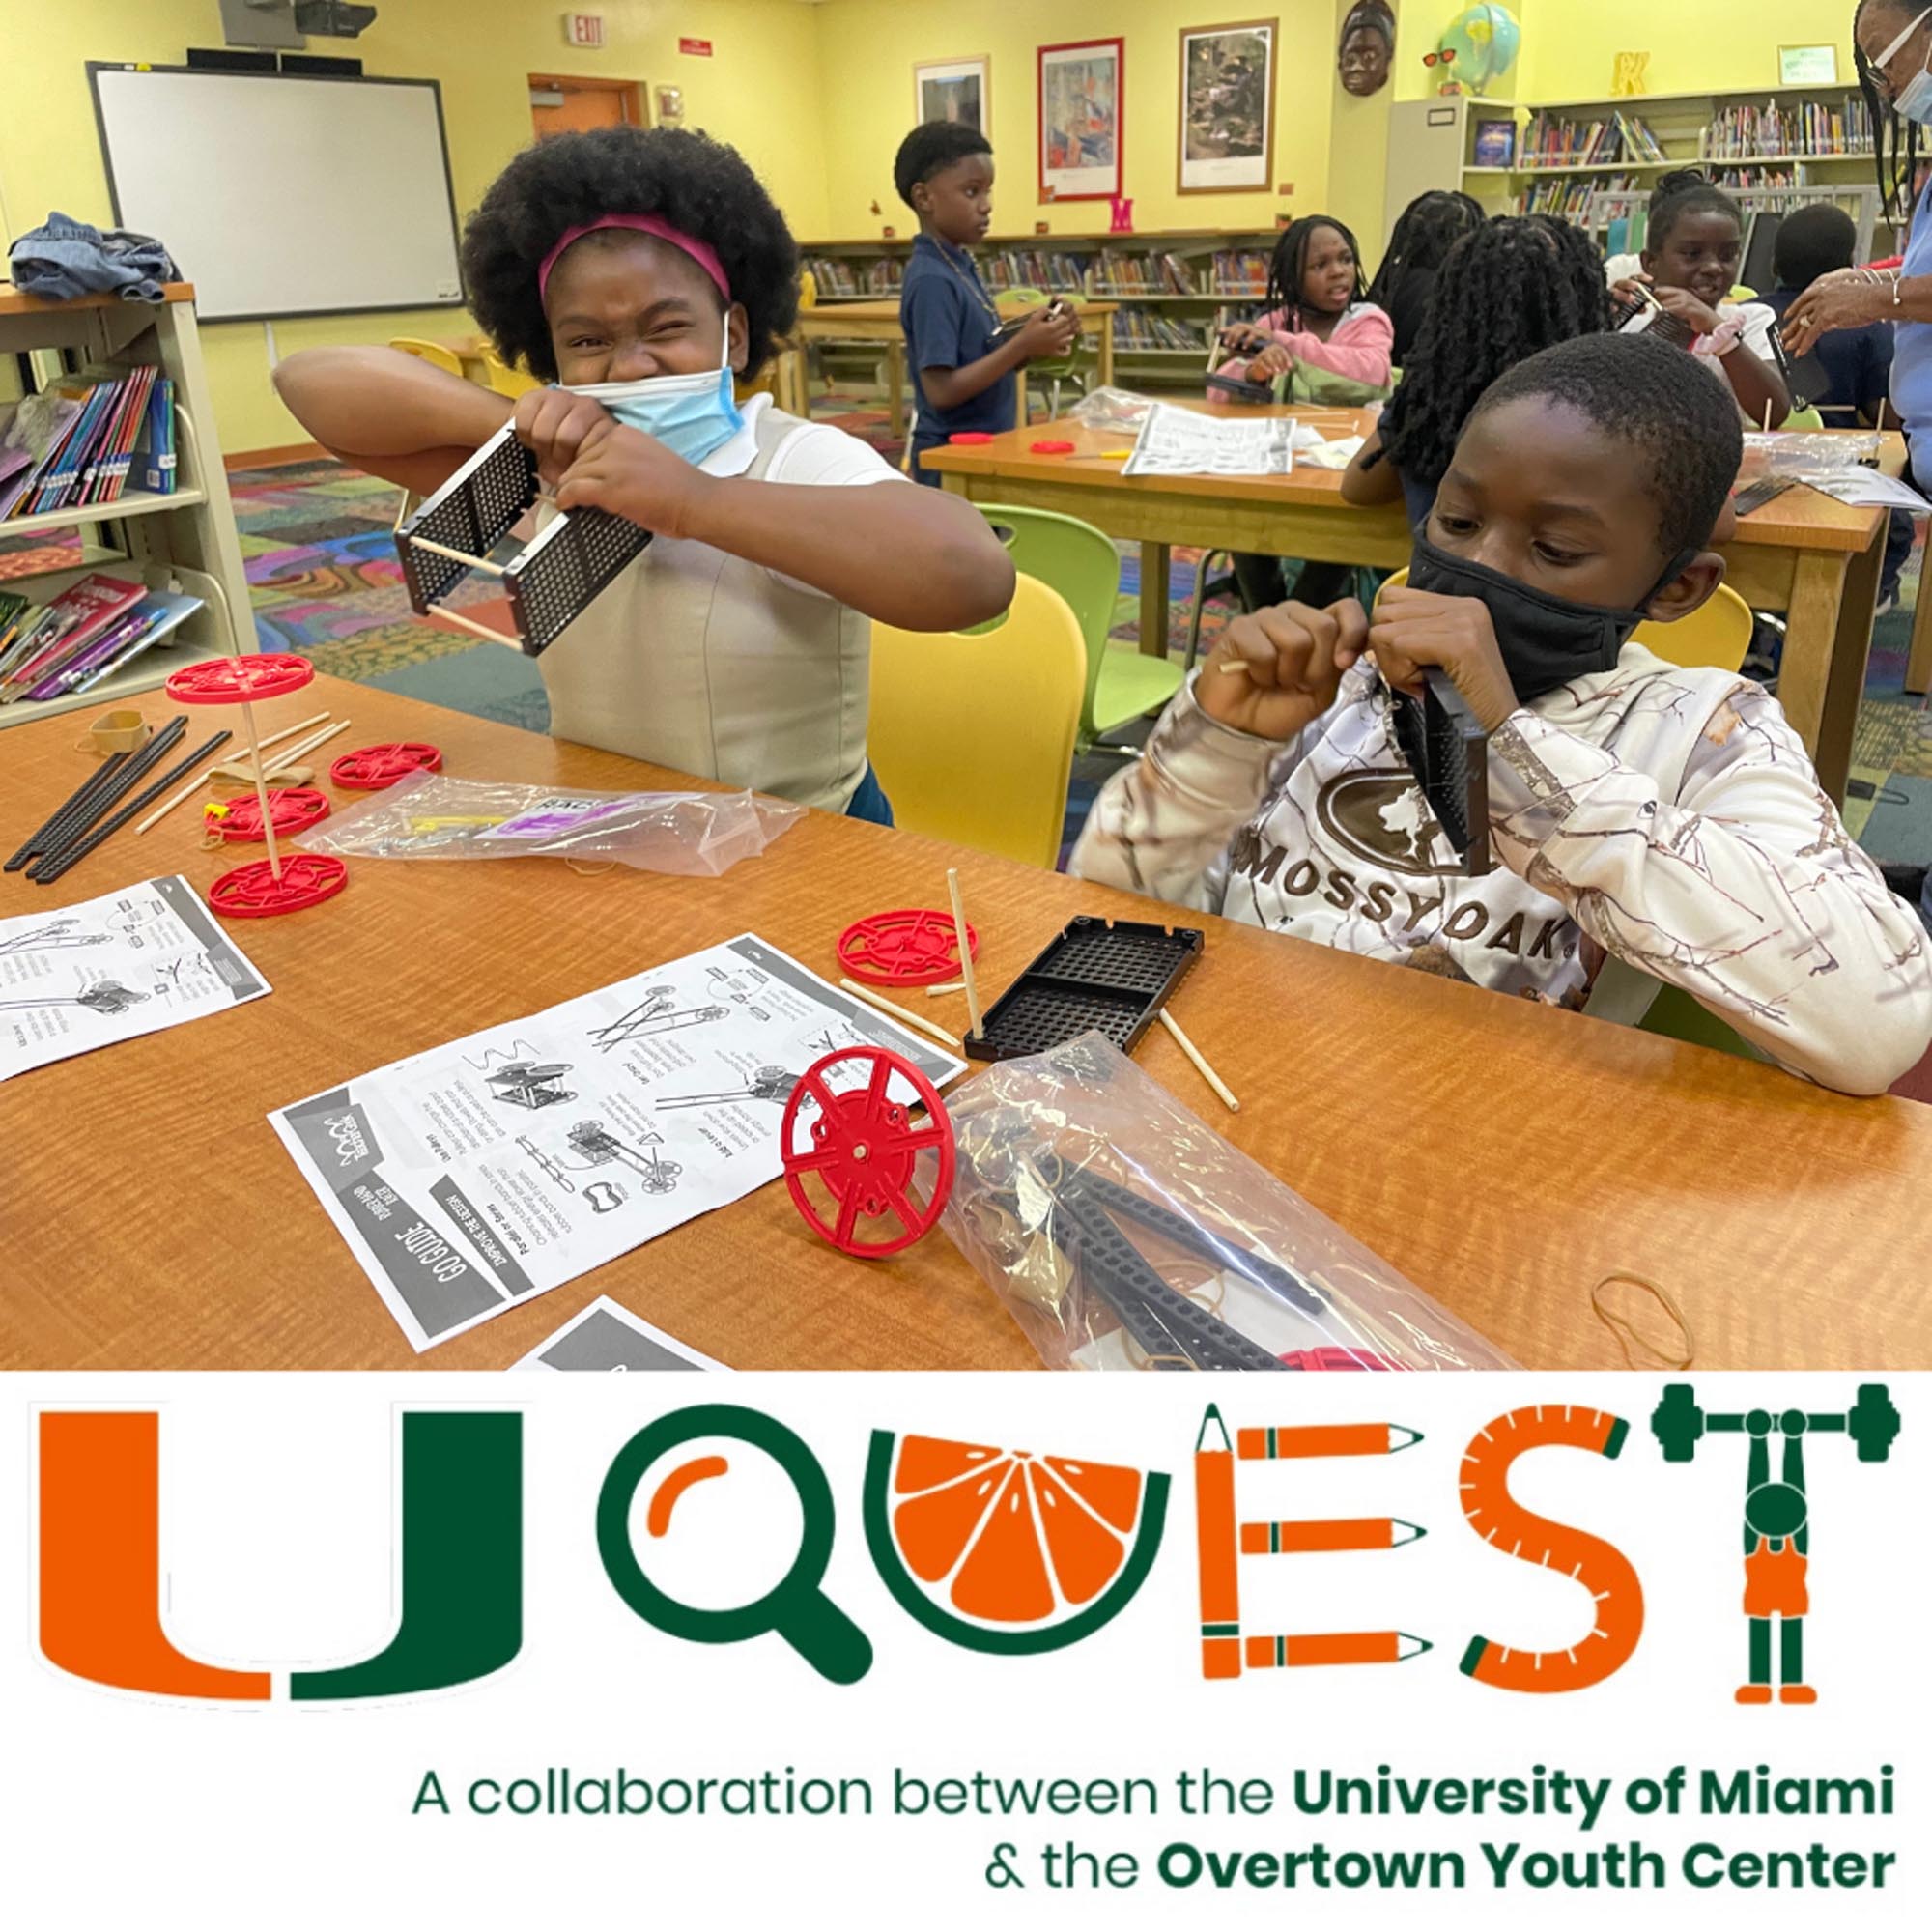 University of Miami's UQUEST program